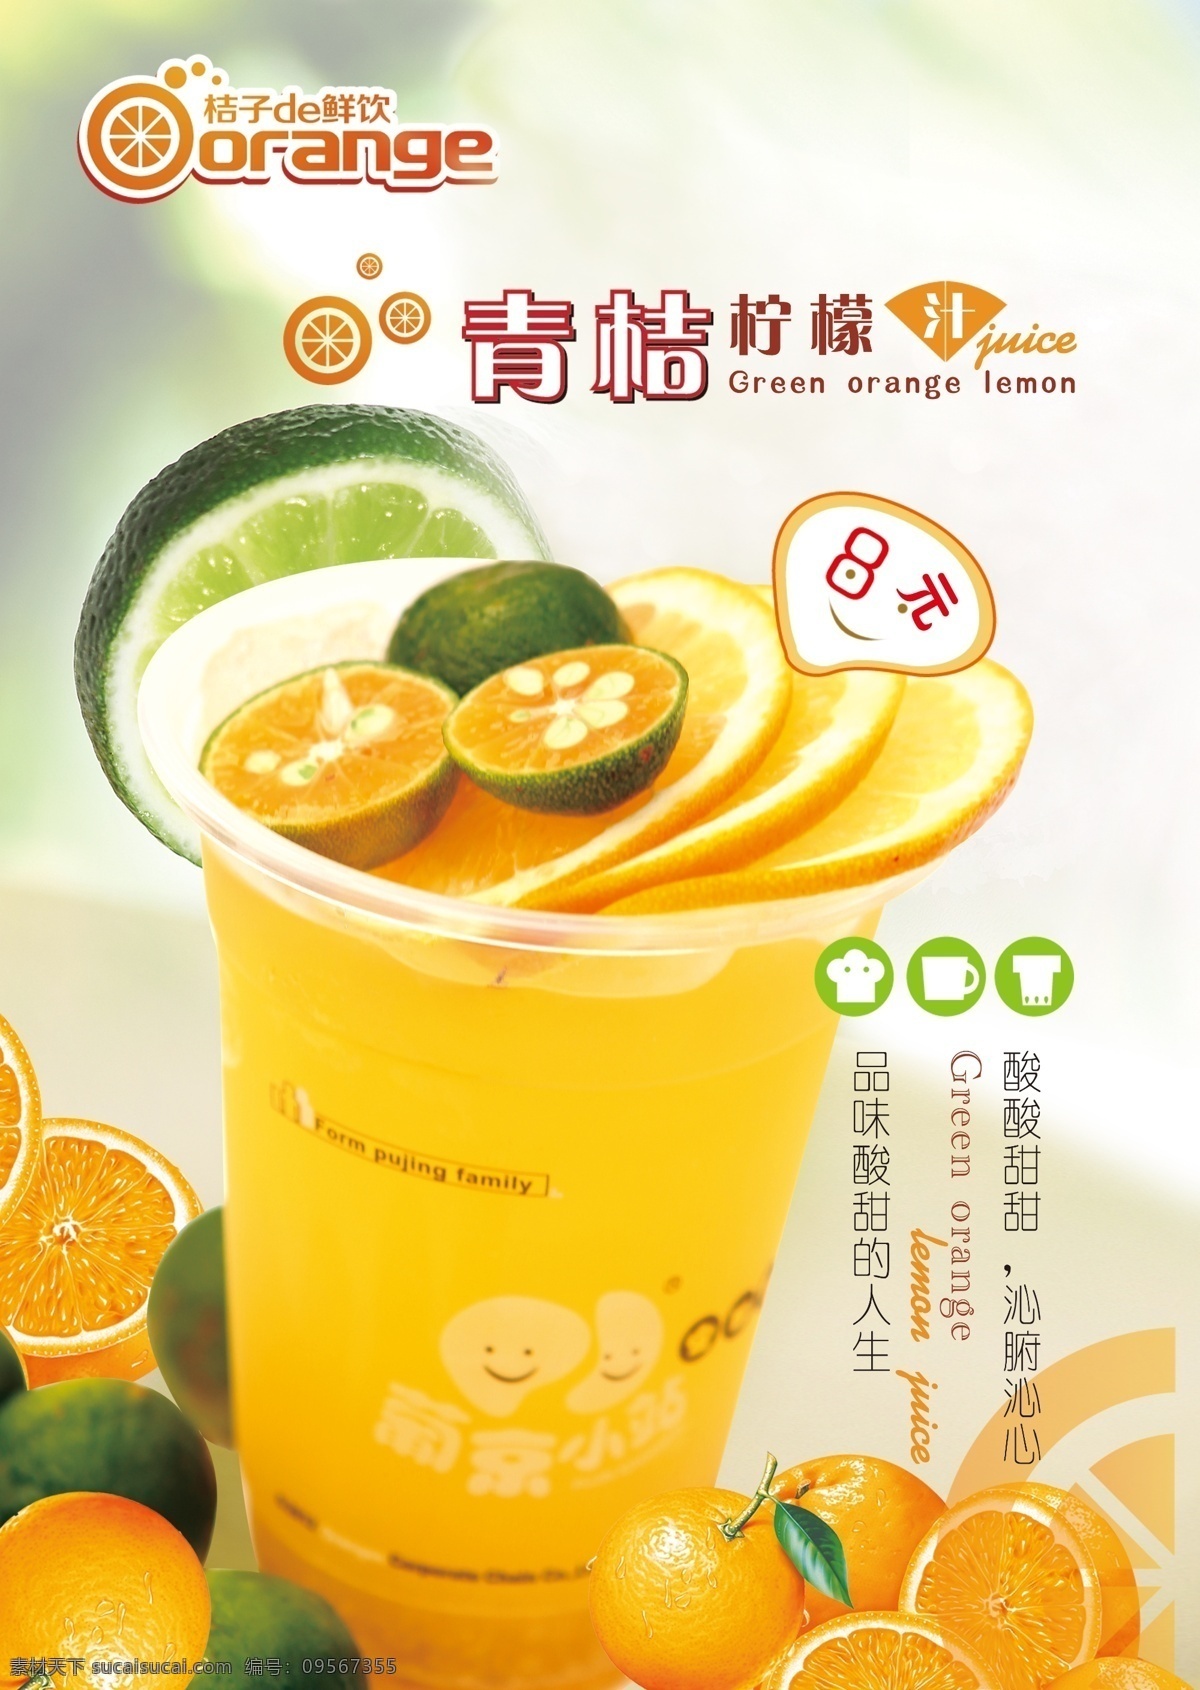 青桔柠檬汁 橘子 柠檬 广告设计模板 源文件